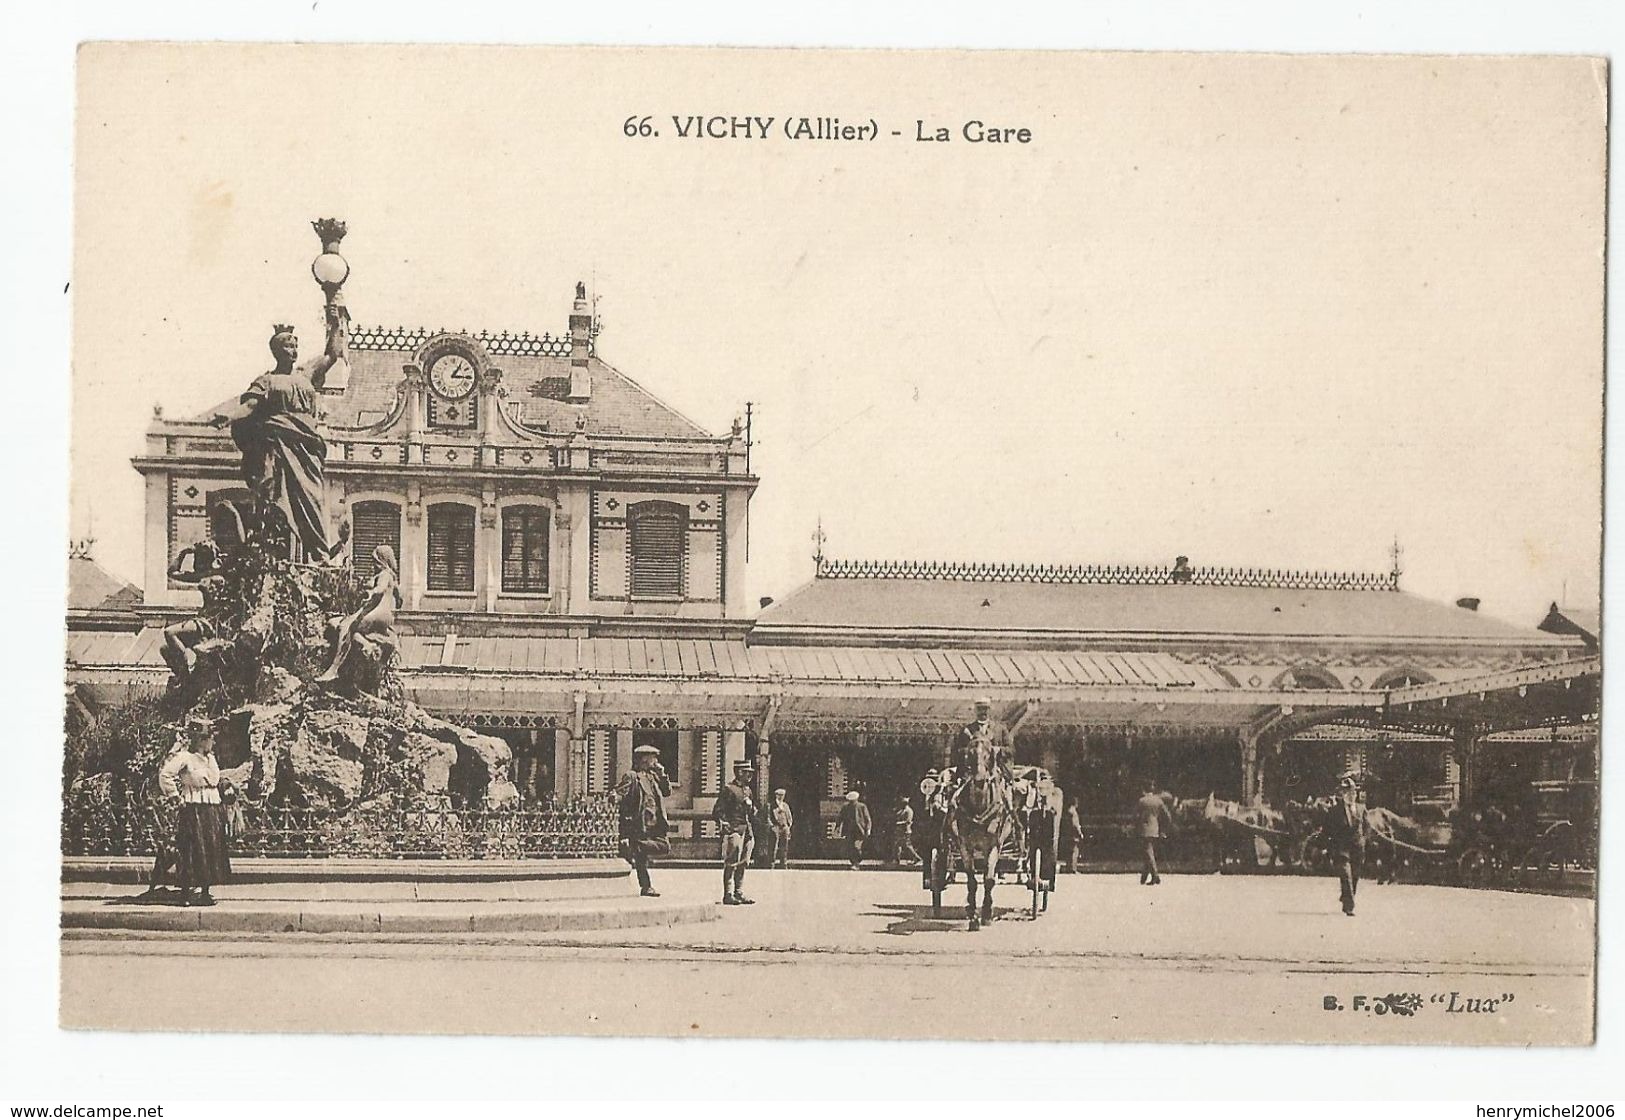 03 Allier - Vichy La Gare N66 - Vichy